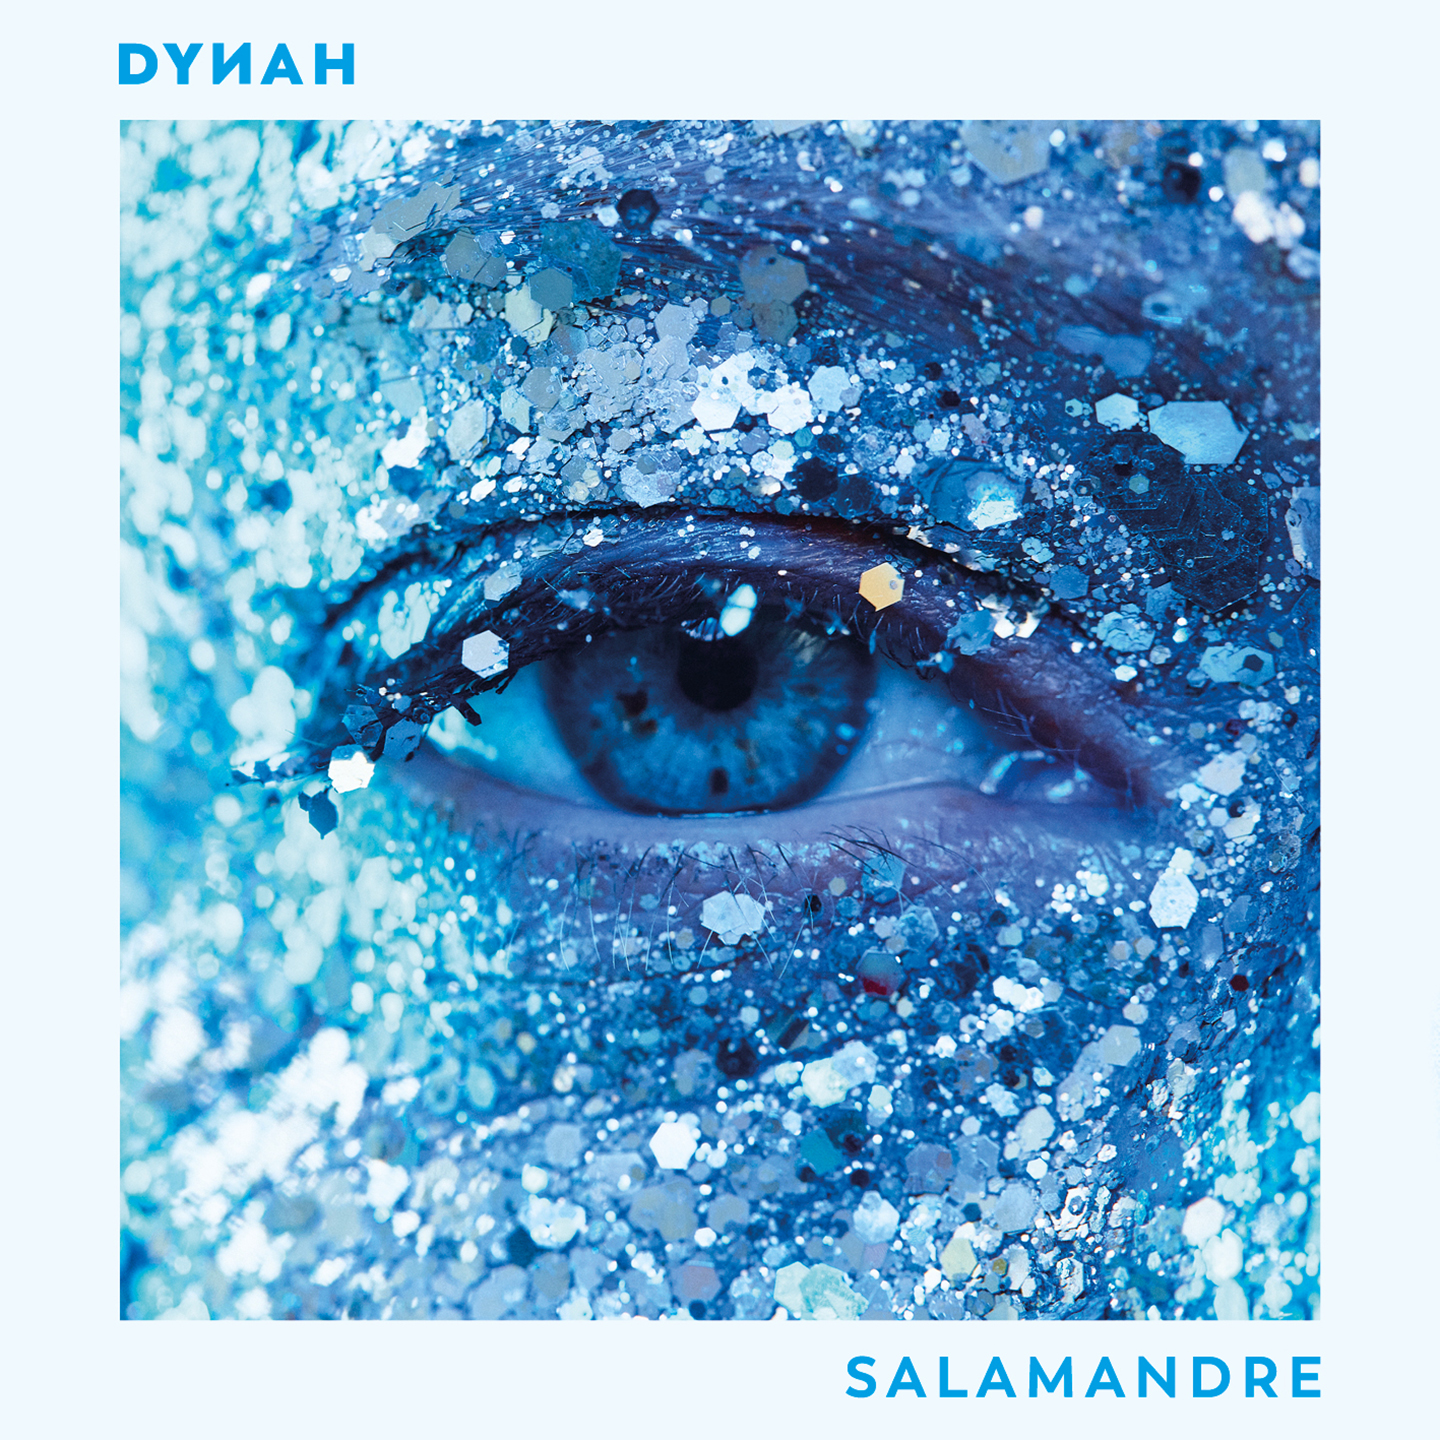 Dynah - Salamandre